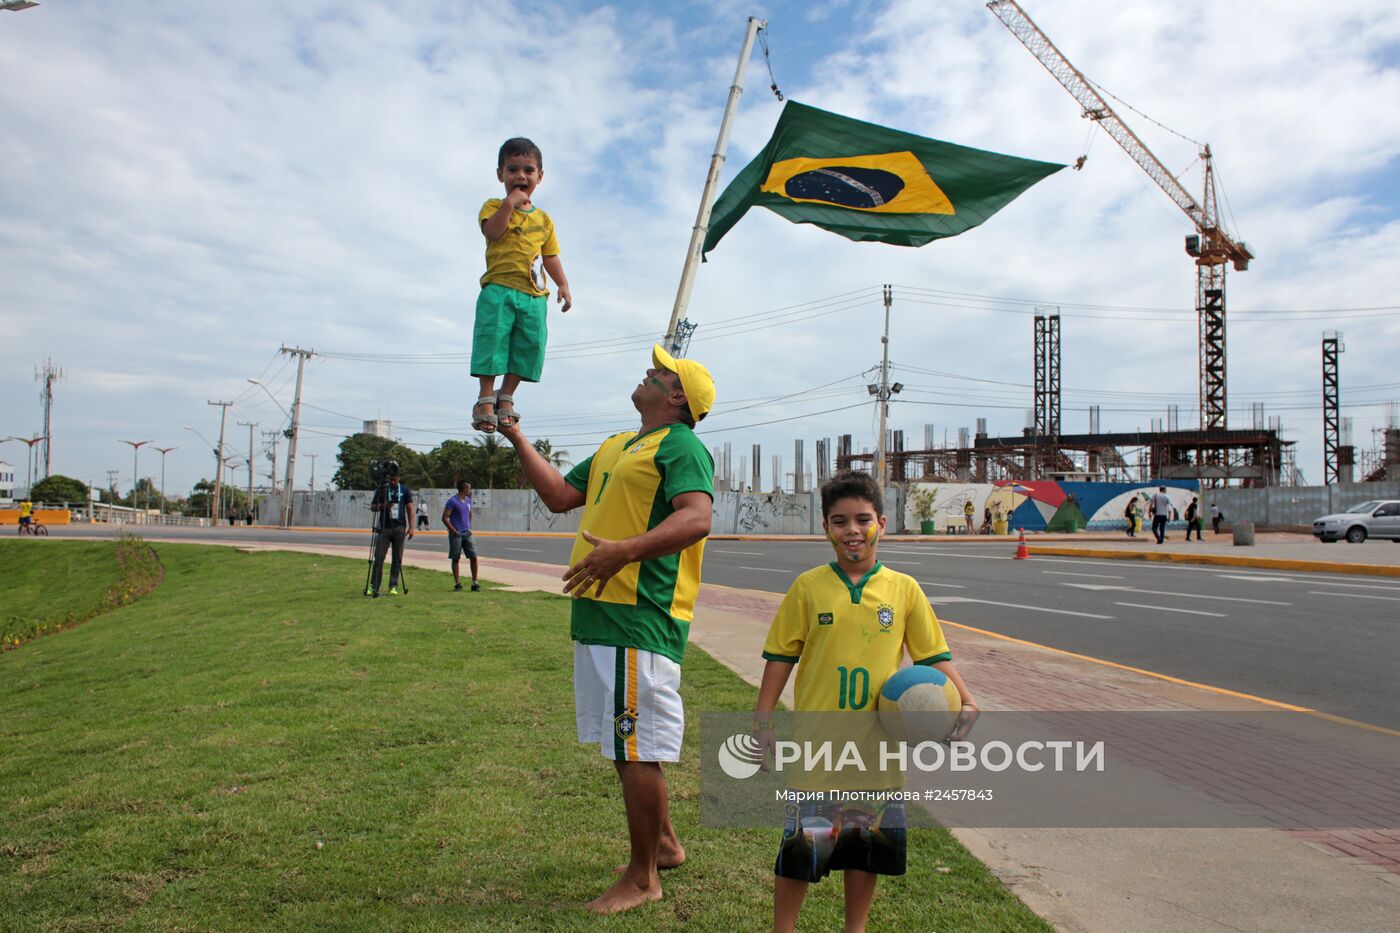 Футбол. Чемпионат мира - 2014. Матч Бразилия - Колумбия